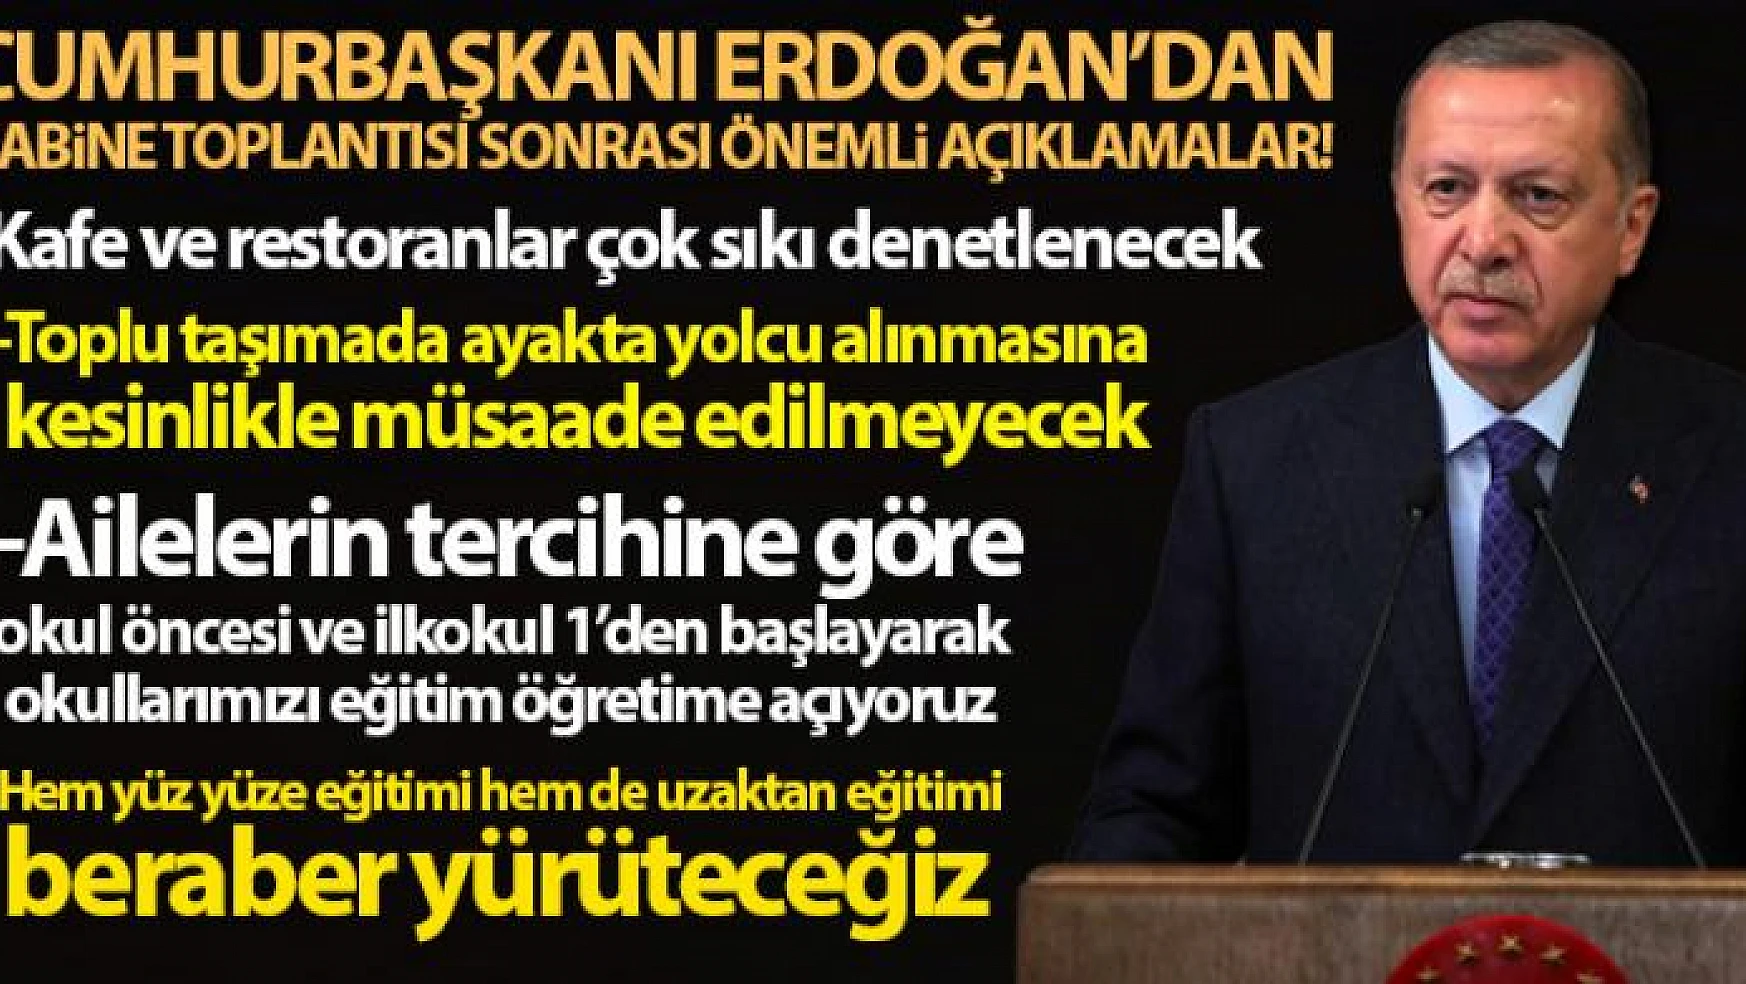 Cumhurbaşkanı Erdoğan: 'Okullarımızı eğitim-öğretime açıyoruz, yüz yüze ve uzaktan eğitim birlikte yapılacak'